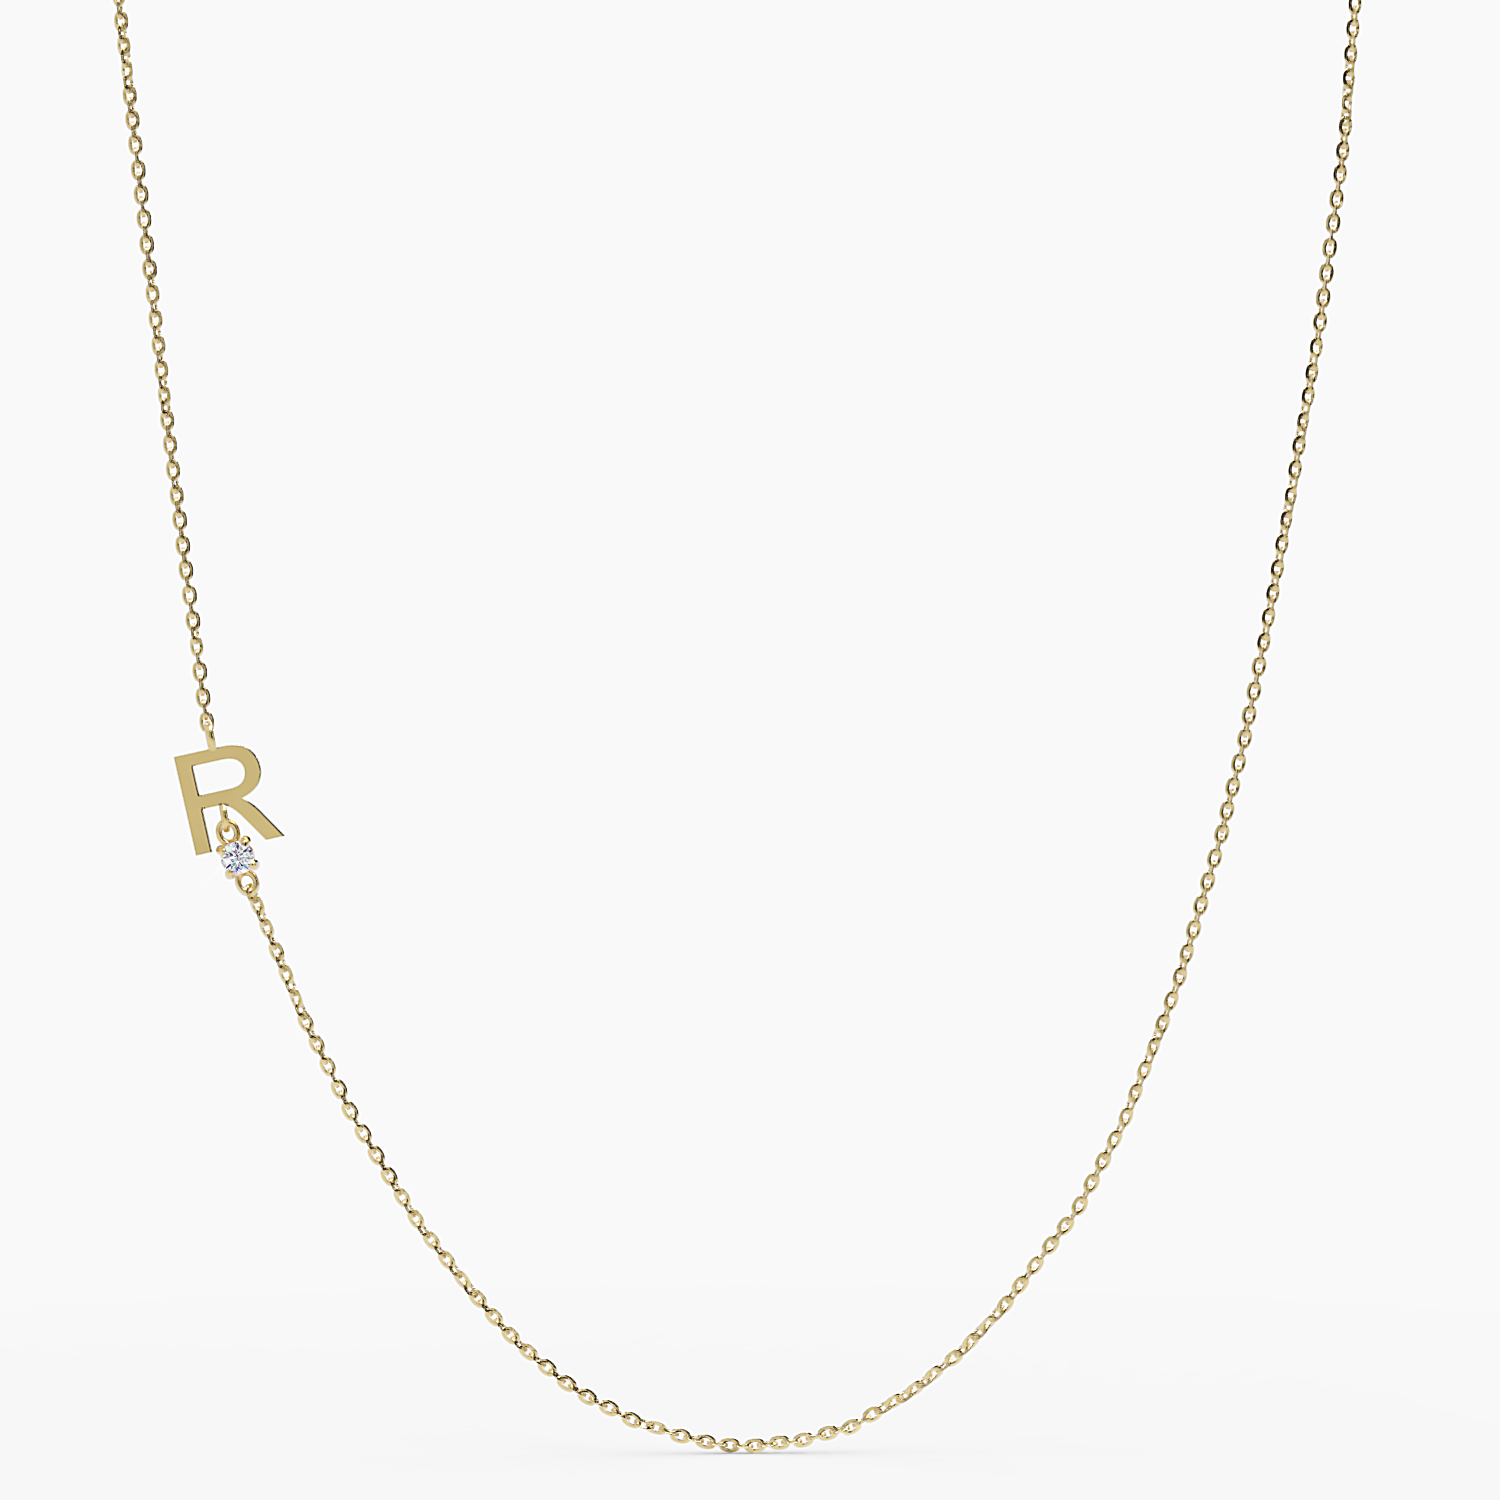 Sideways Initial R Necklace with Diamond